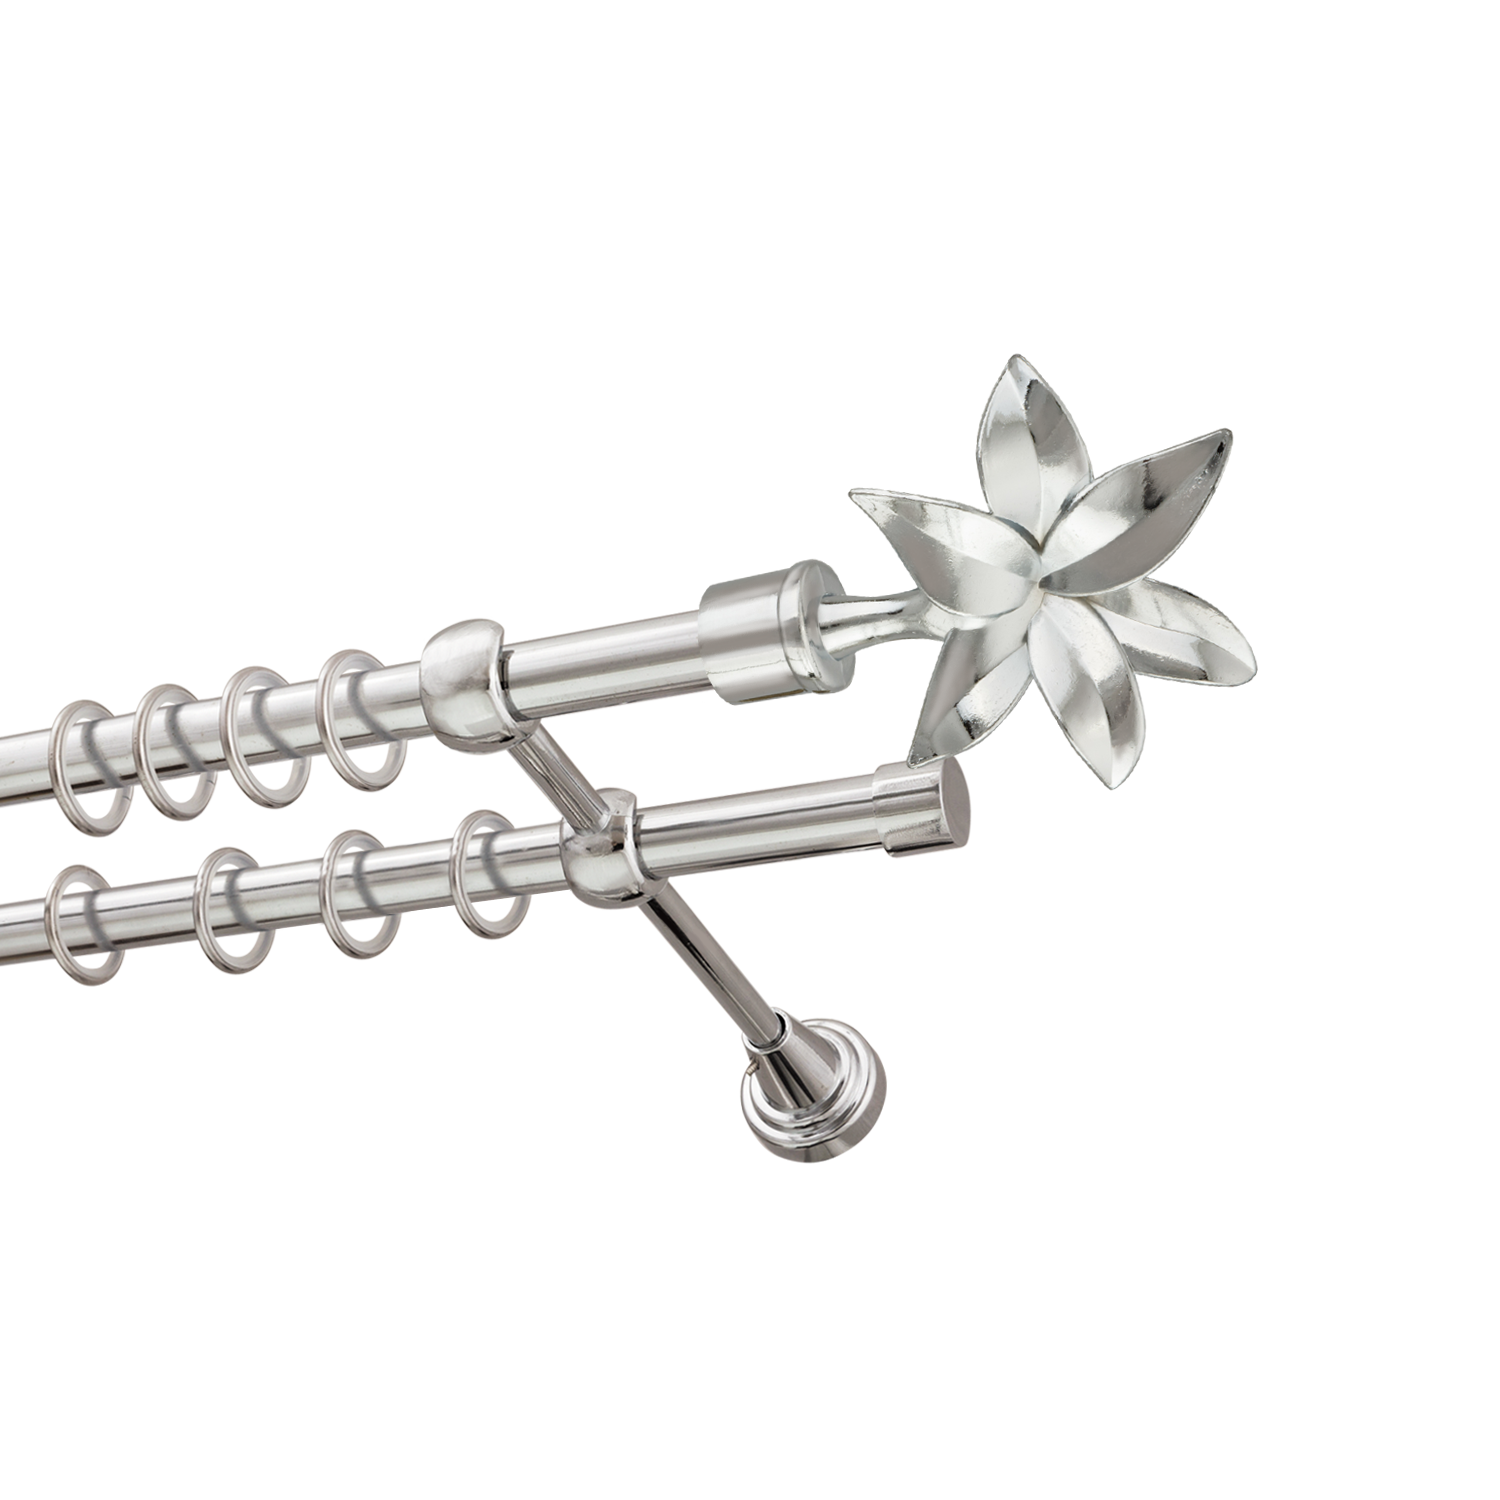 Металлический карниз для штор Магнолия, двухрядный 16/16 мм, серебро, гладкая штанга, длина 140 см - фото Wikidecor.ru